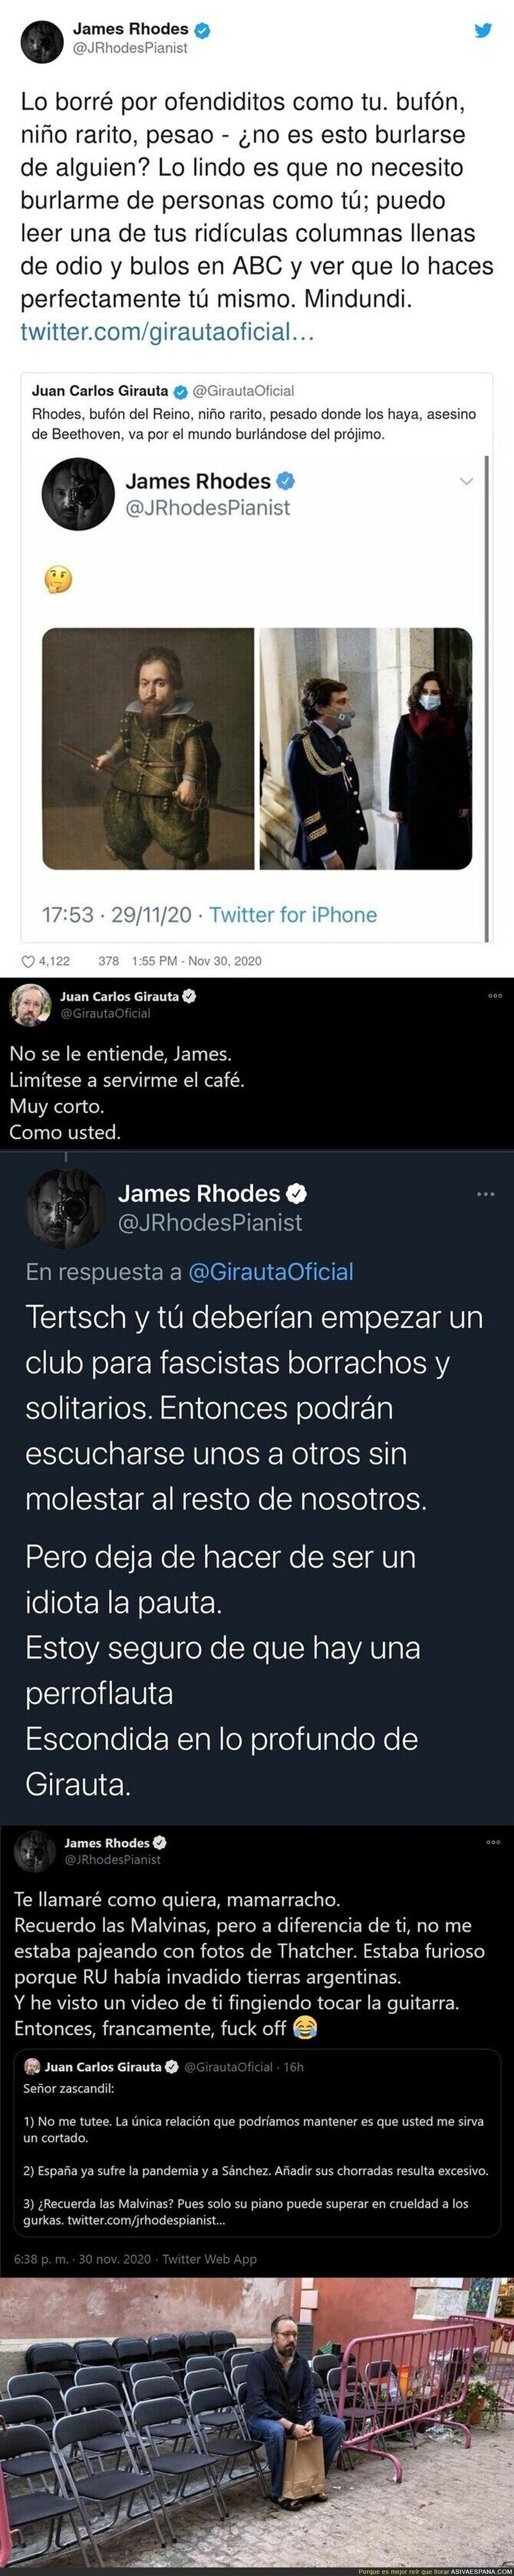 James Rhodes le pega un repasito a Juan Carlos Girauta que todos están aplaudiendo menos los fachitas